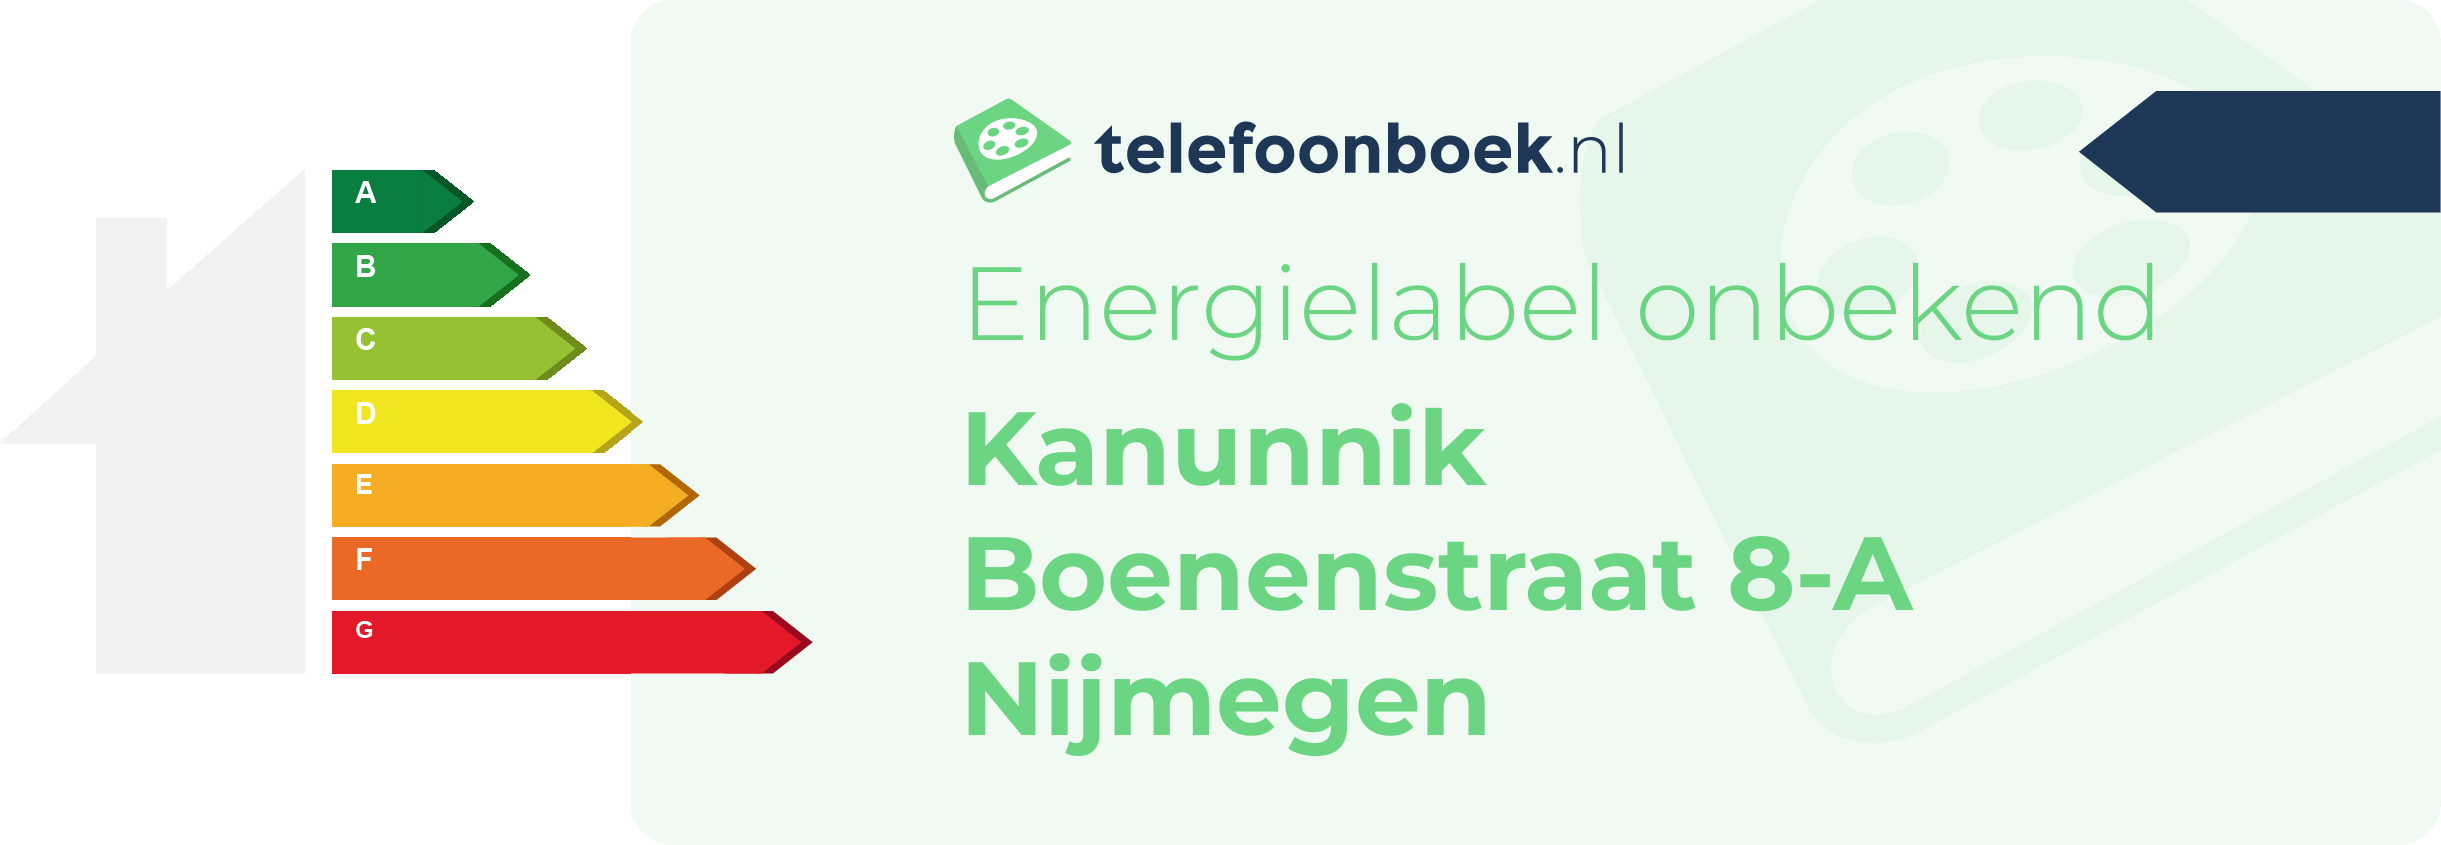 Energielabel Kanunnik Boenenstraat 8-A Nijmegen